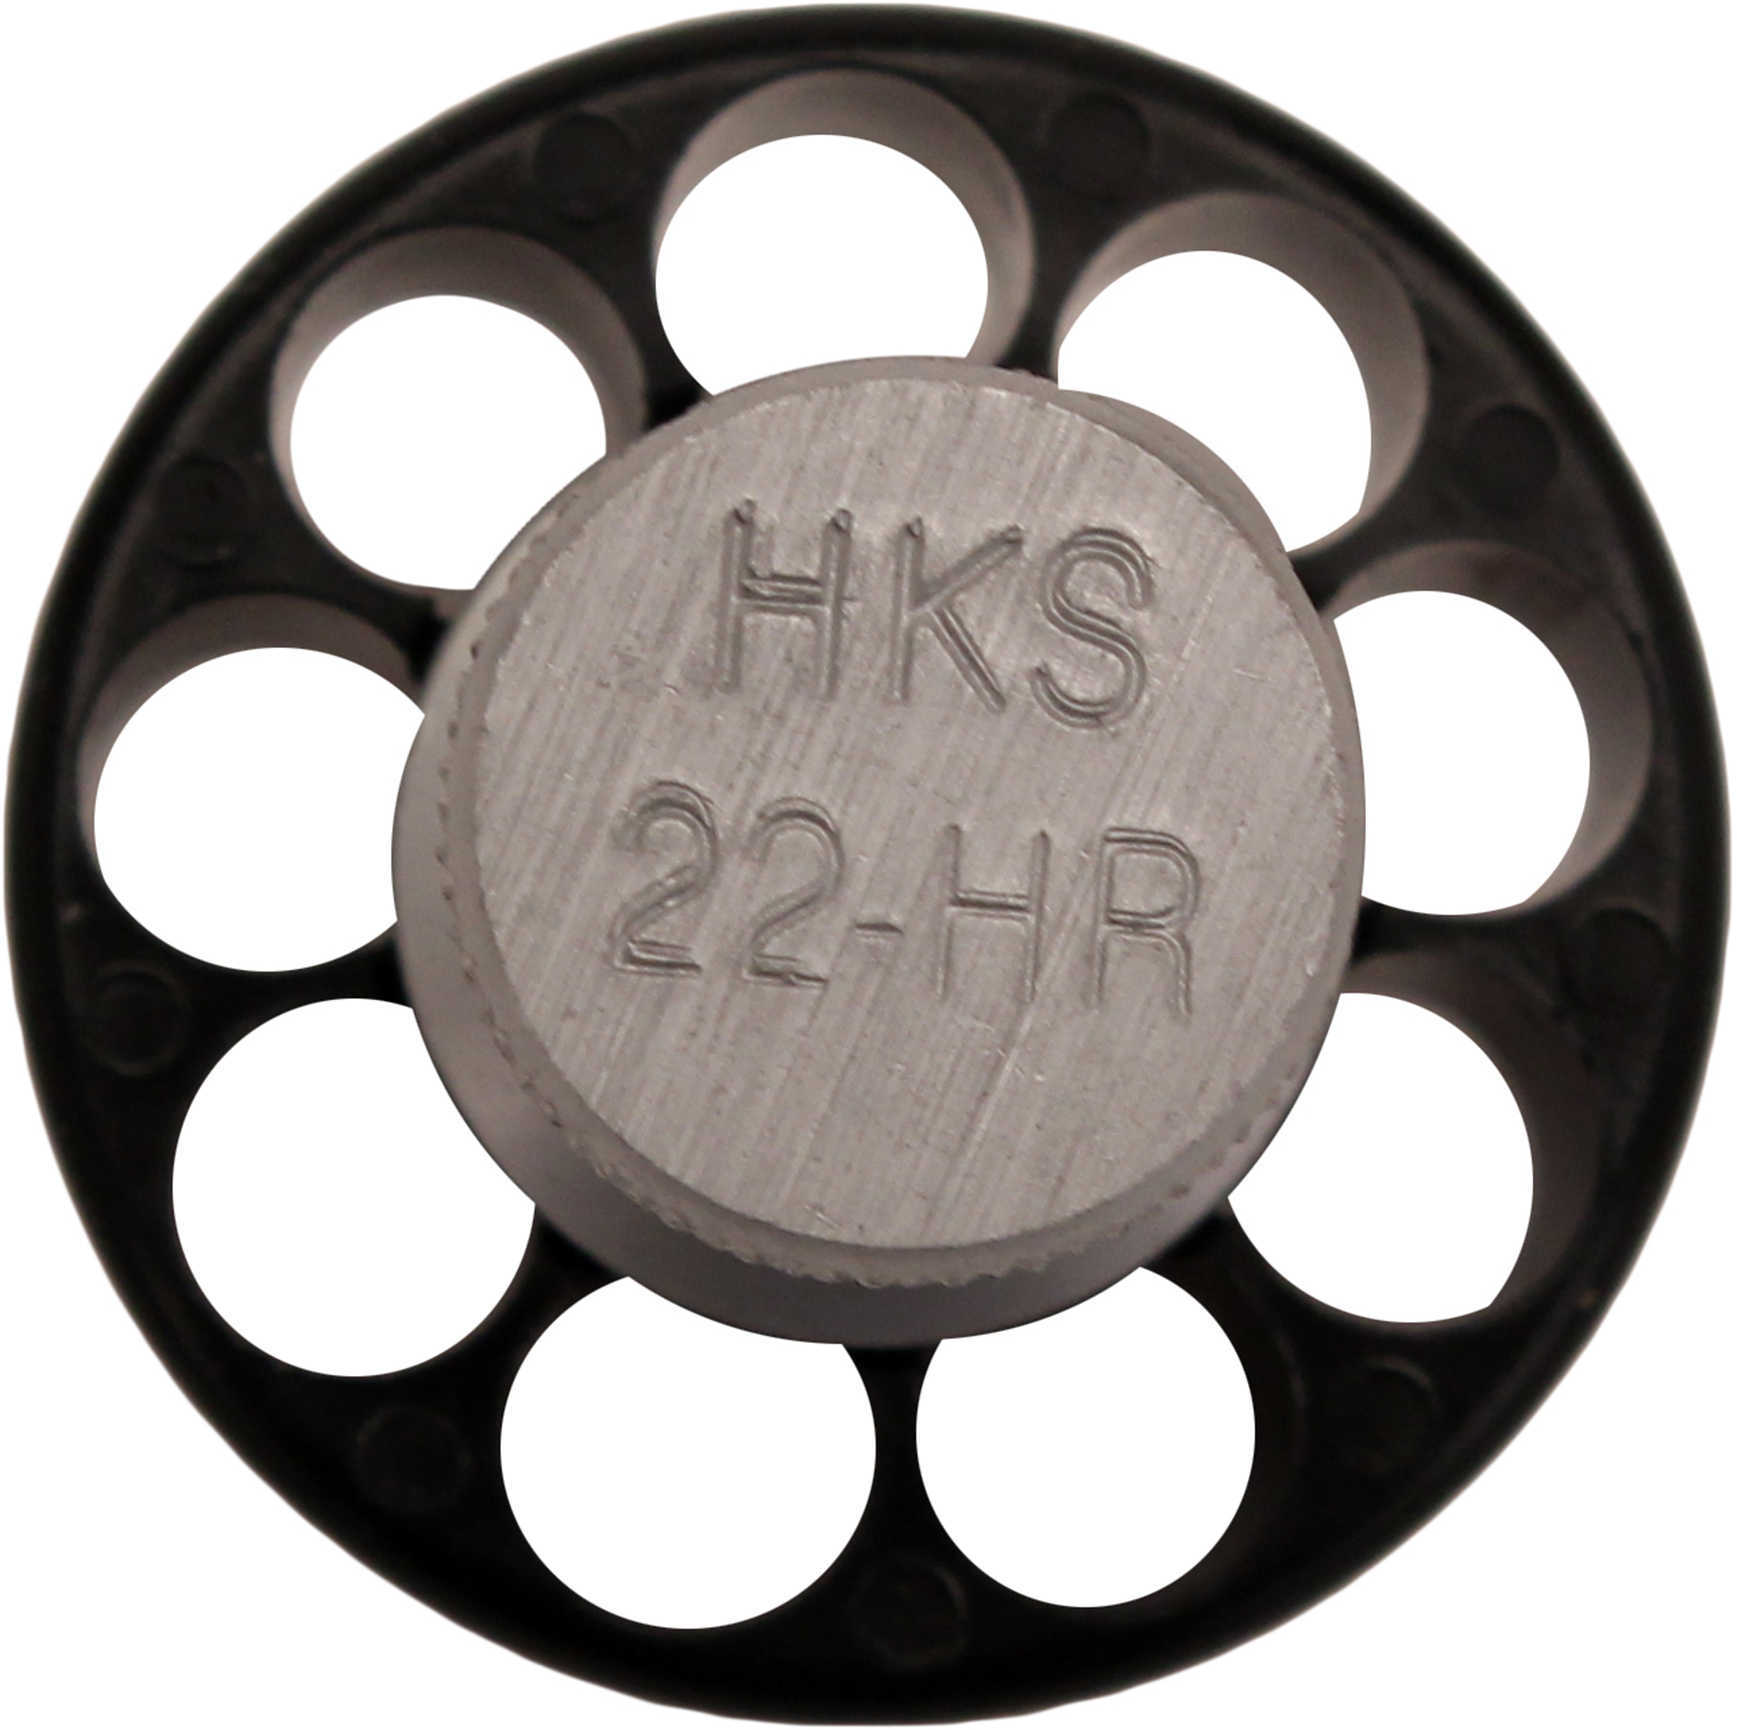 HKS 22HR Speedloader